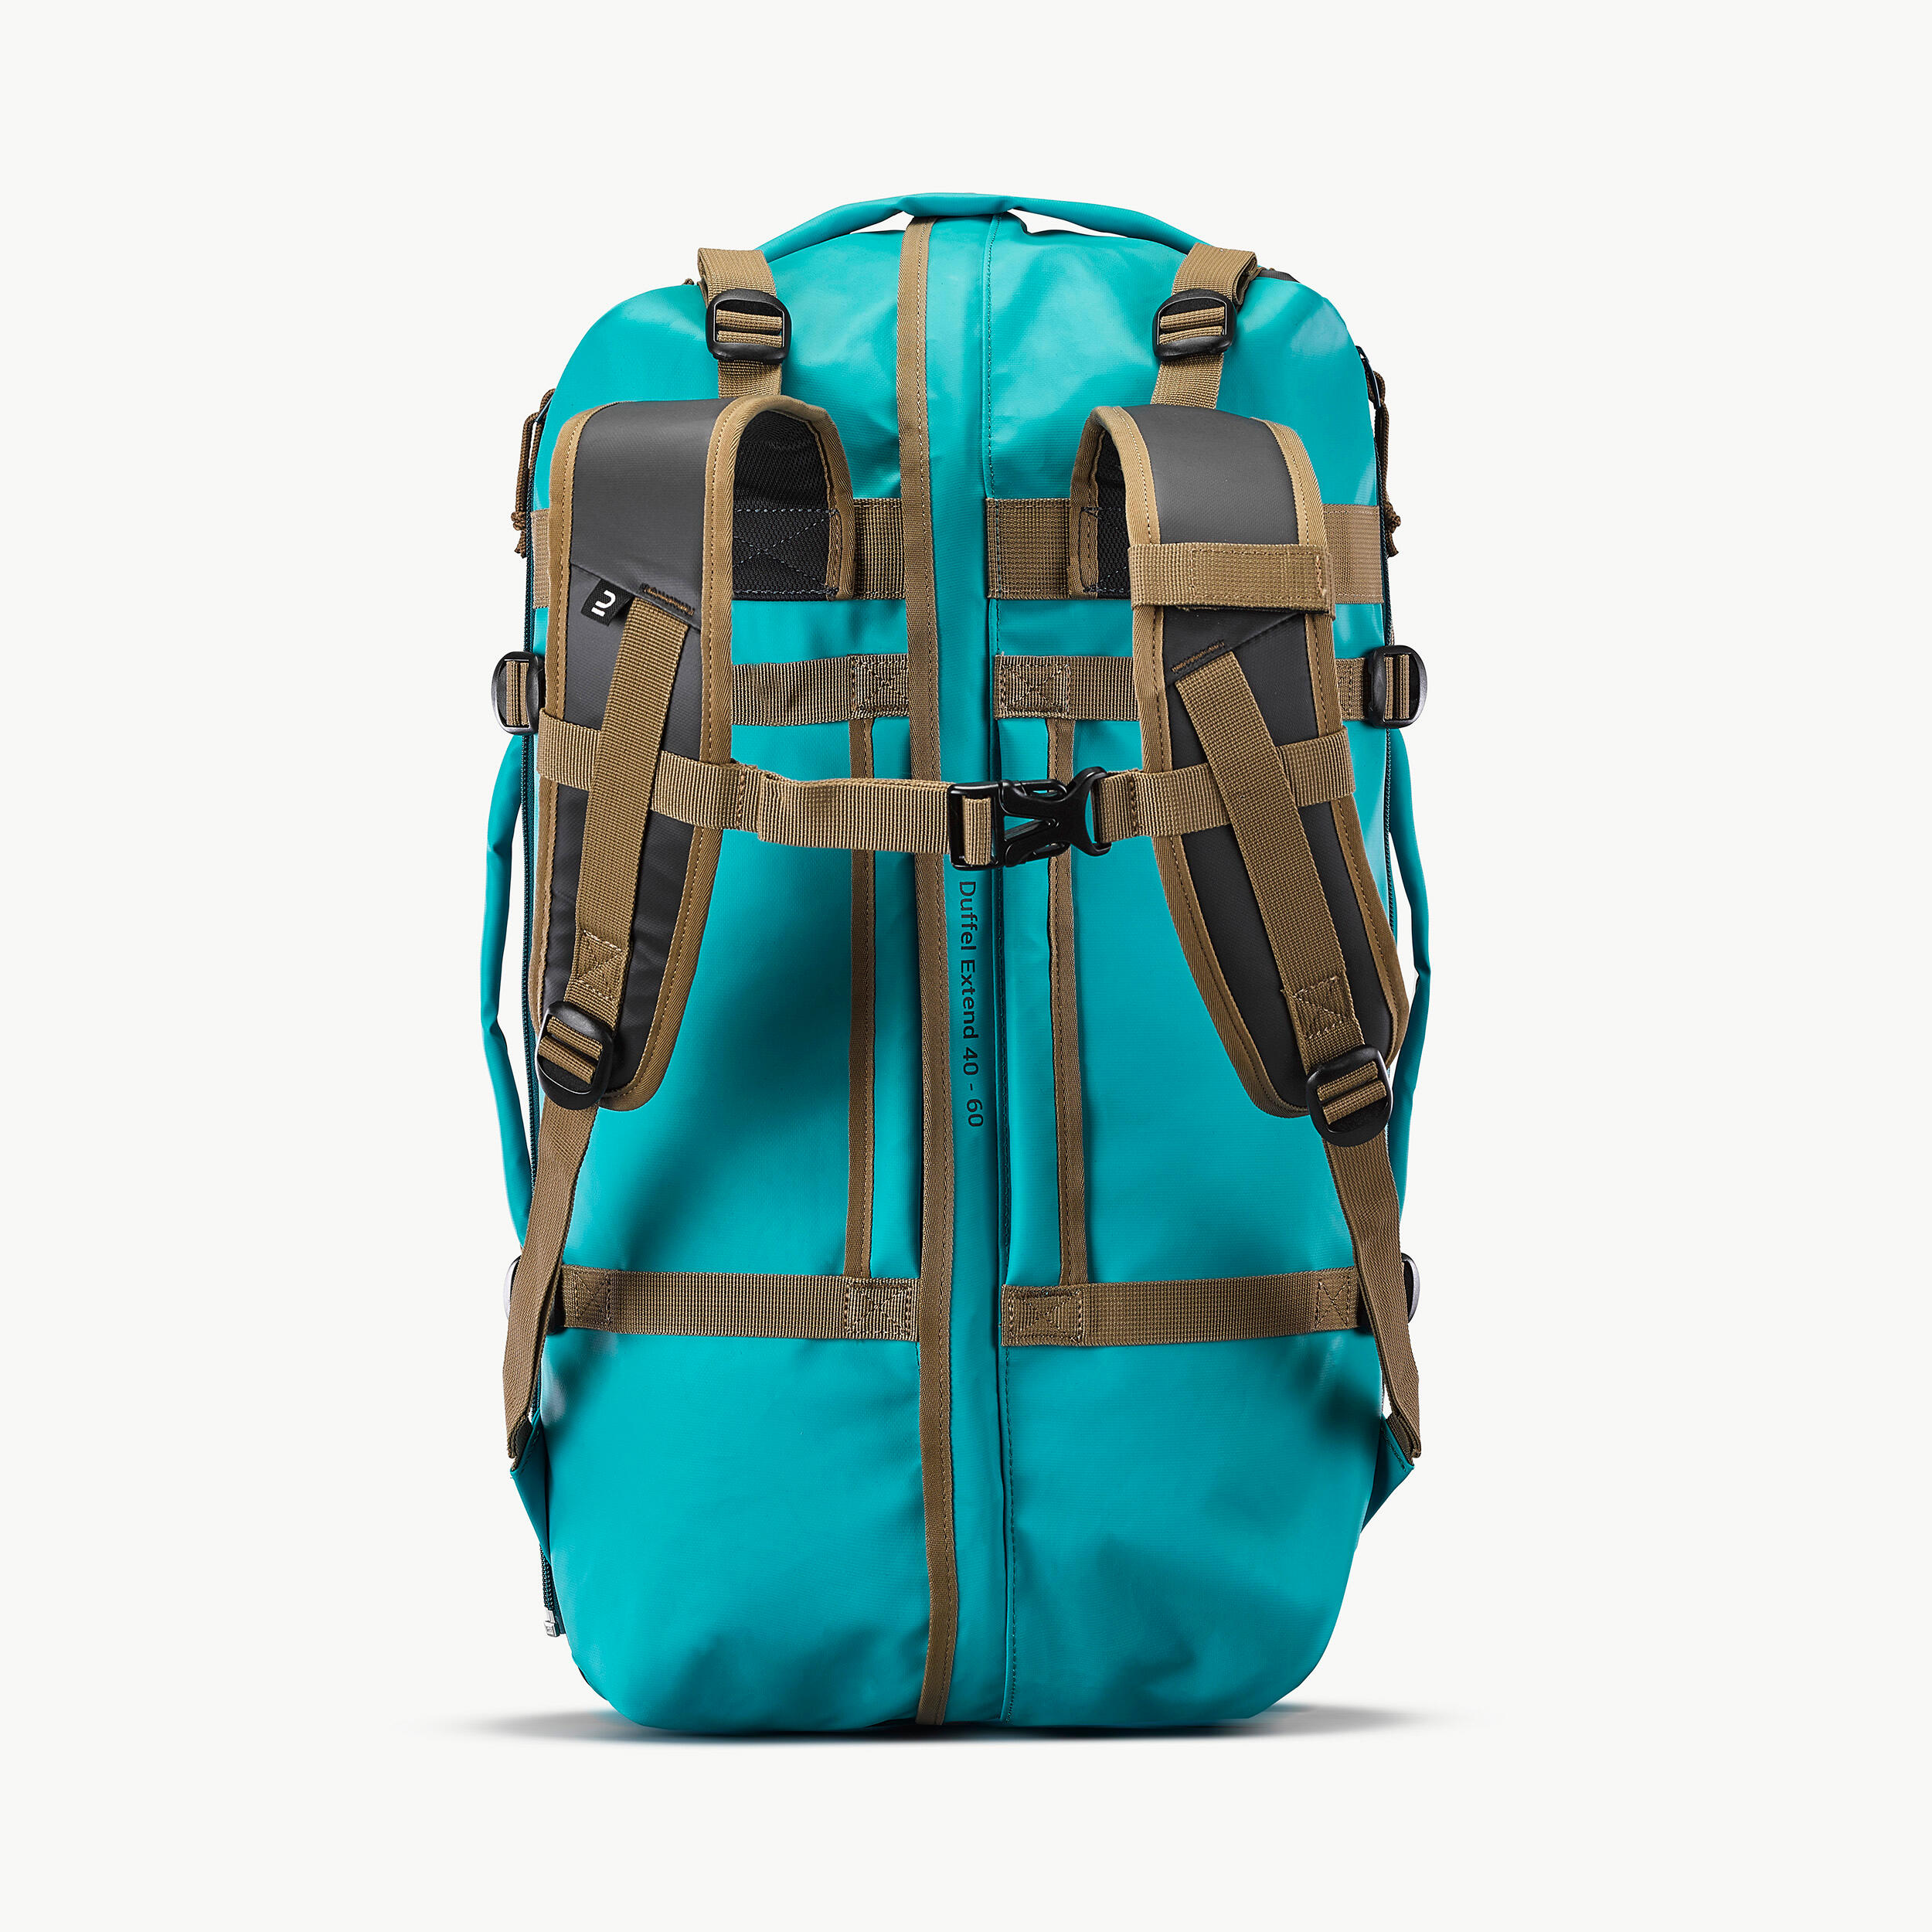 Trekking Carry Bag - 40 L to 60 L - DUFFEL 500 EXTEND 9/11